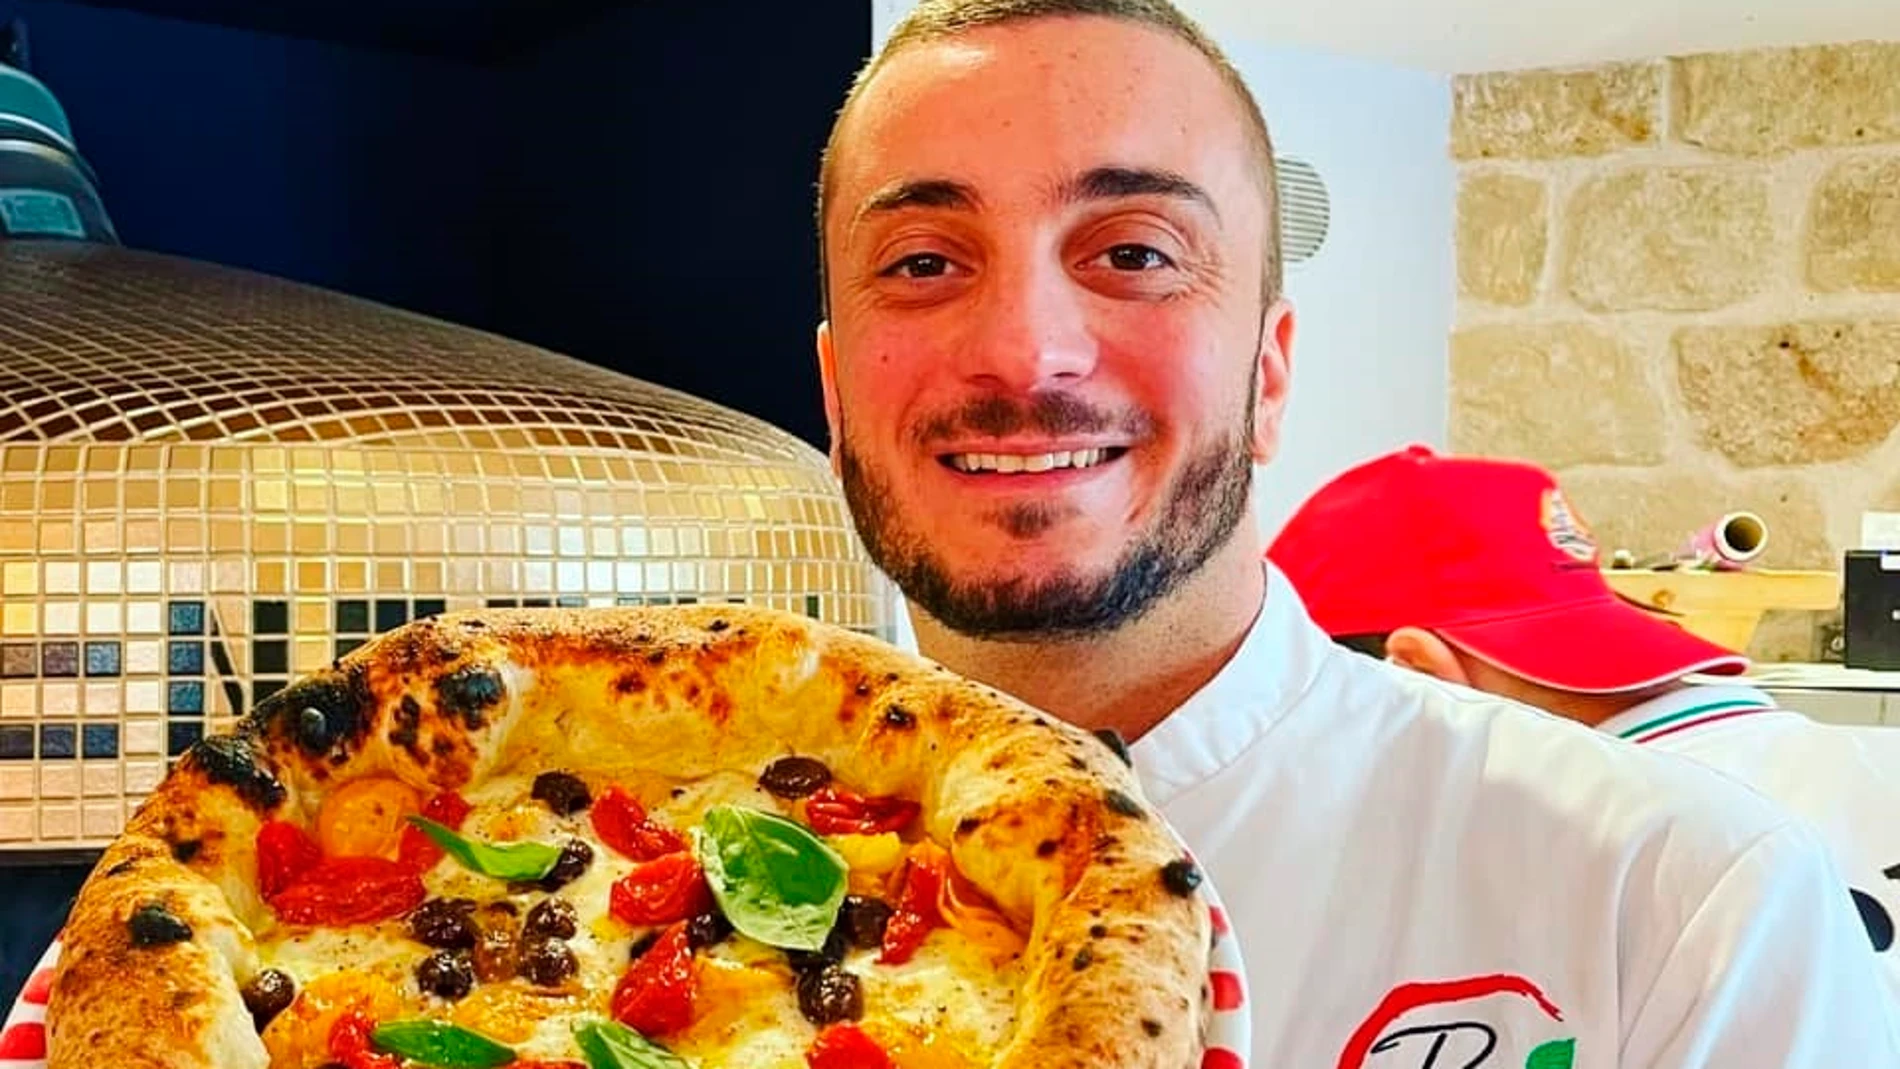 La mejor pizza europea de 2021 se come en España y lleva chorizo de León